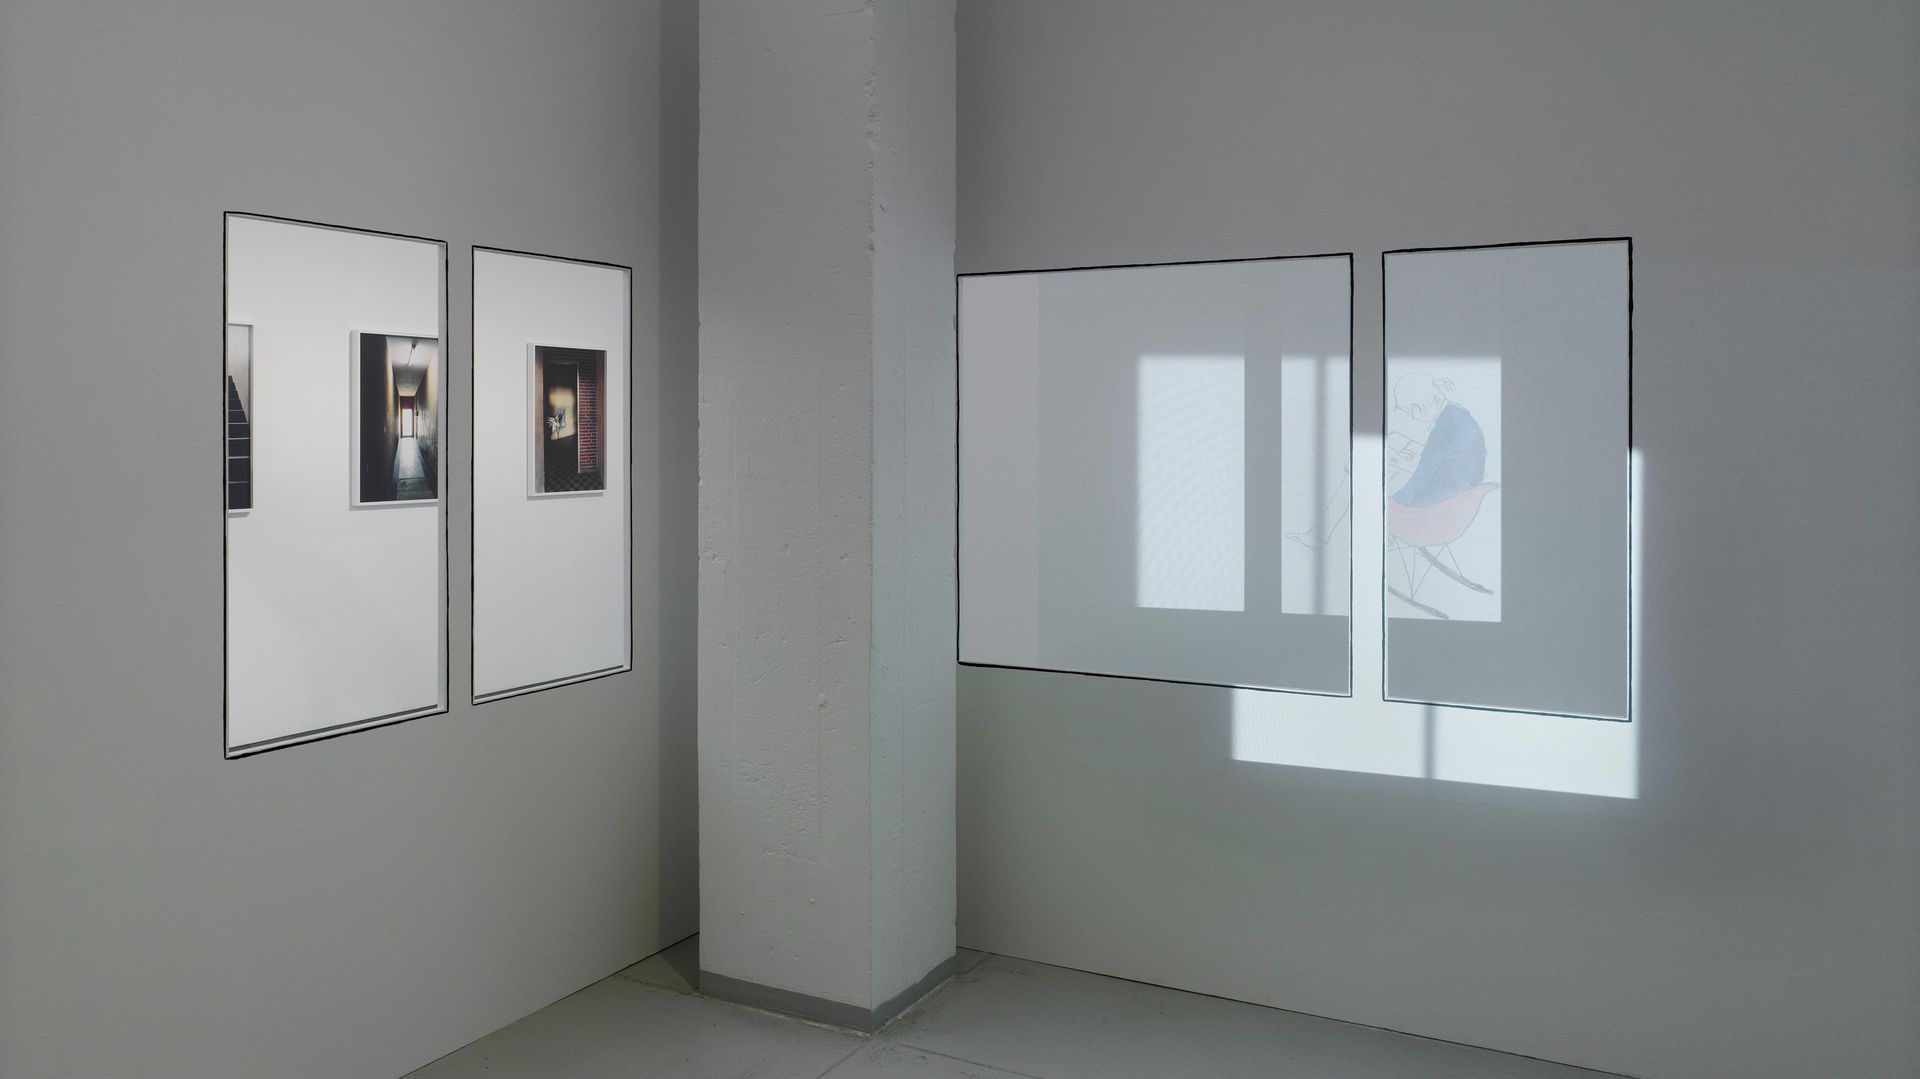 Installationsansicht HOMEBASE, KAI 10 / Arthena Foundation, Düsseldorf 2016, Zilla Leutenegger, FLAT Installation, 2015-2016